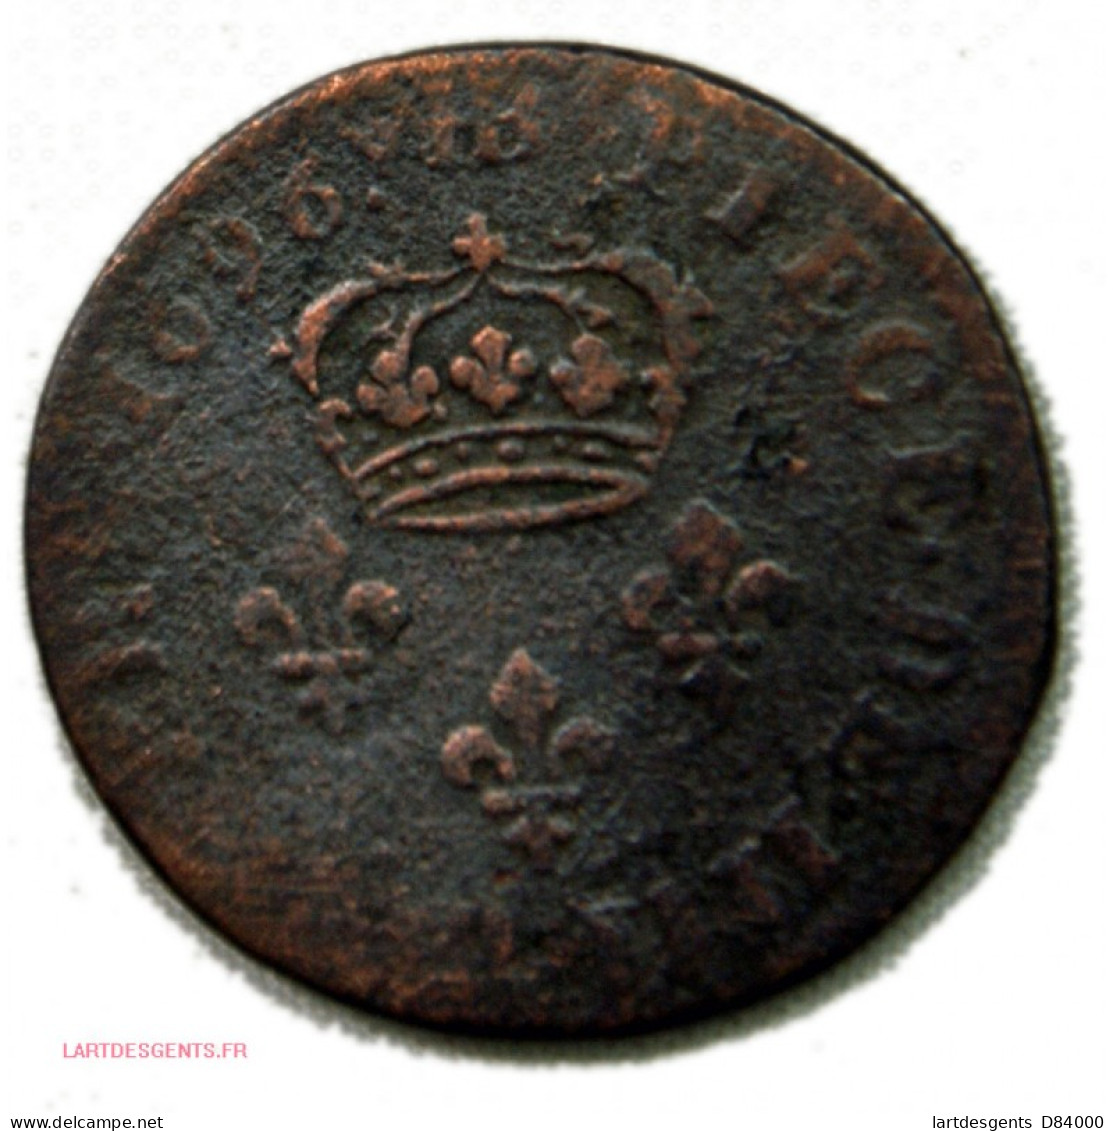 Louis XIIII 4 DENIERS 1696 BB + 1707 BB, Lartdesgents - 1610-1643 Lodewijk XIII Van Frankrijk De Rechtvaardige